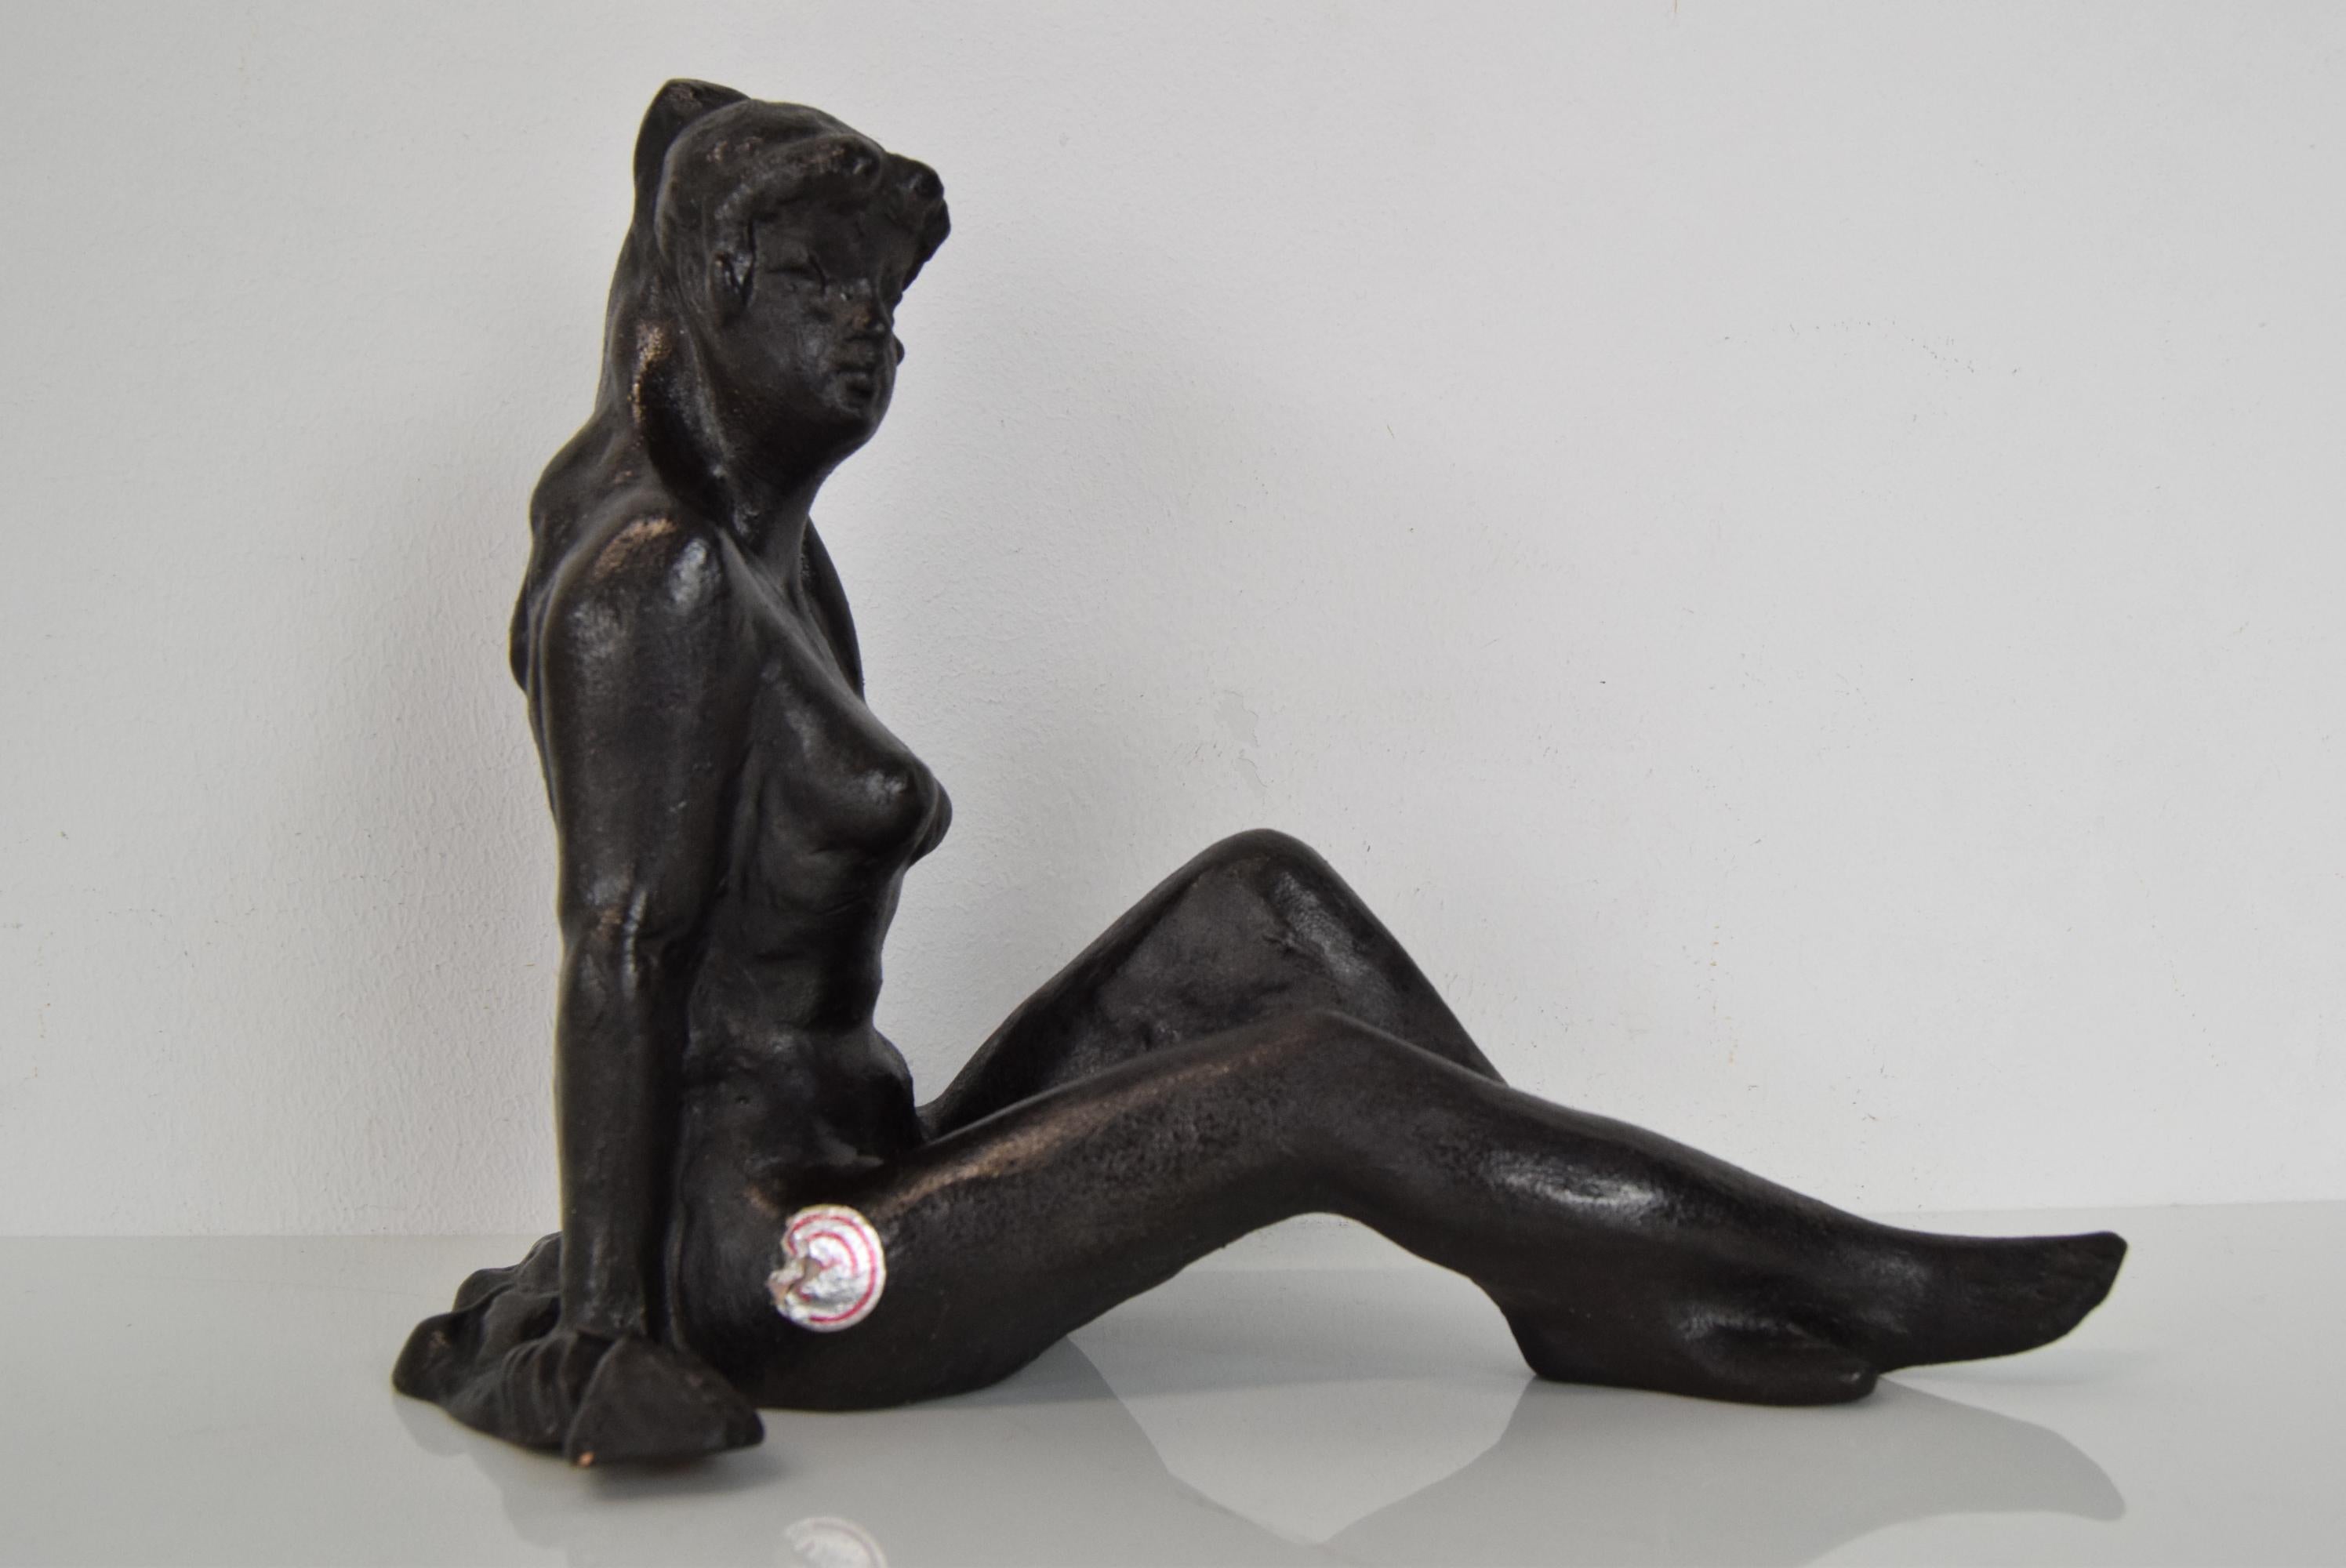 Fabriqué en Tchécoslovaquie
En céramique
La statue d'une jeune fille assise est signée par l'auteur.
Bon état vintage